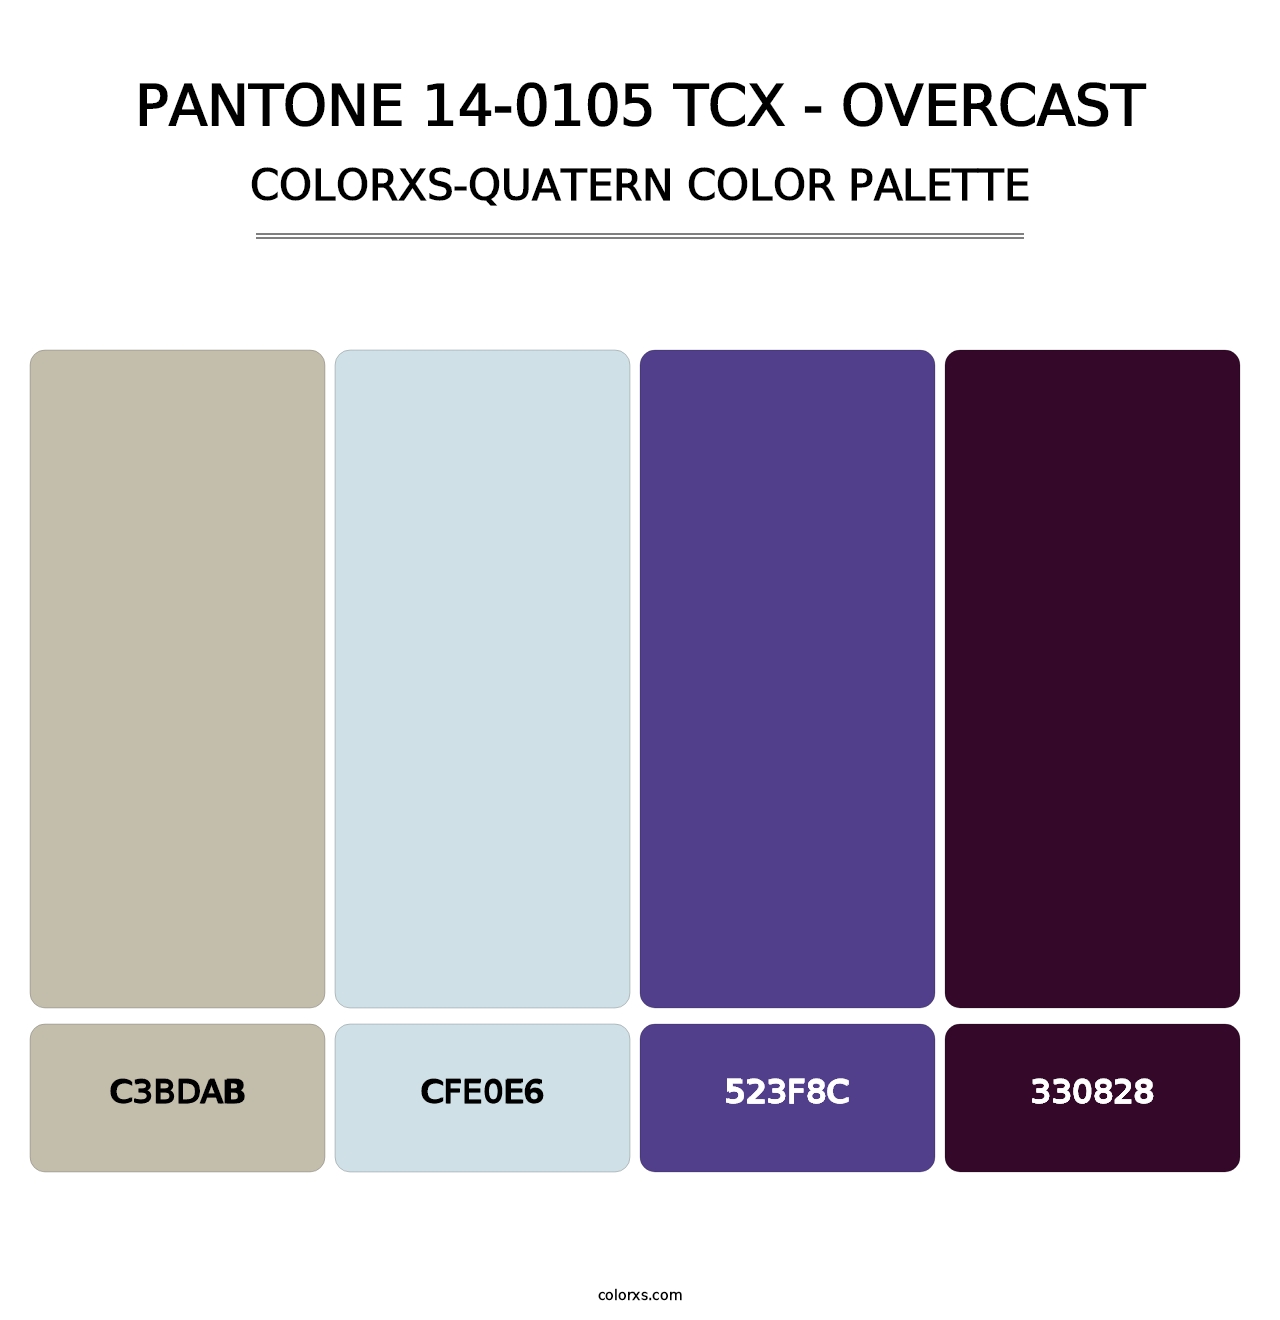 PANTONE 14-0105 TCX - Overcast - Colorxs Quatern Palette